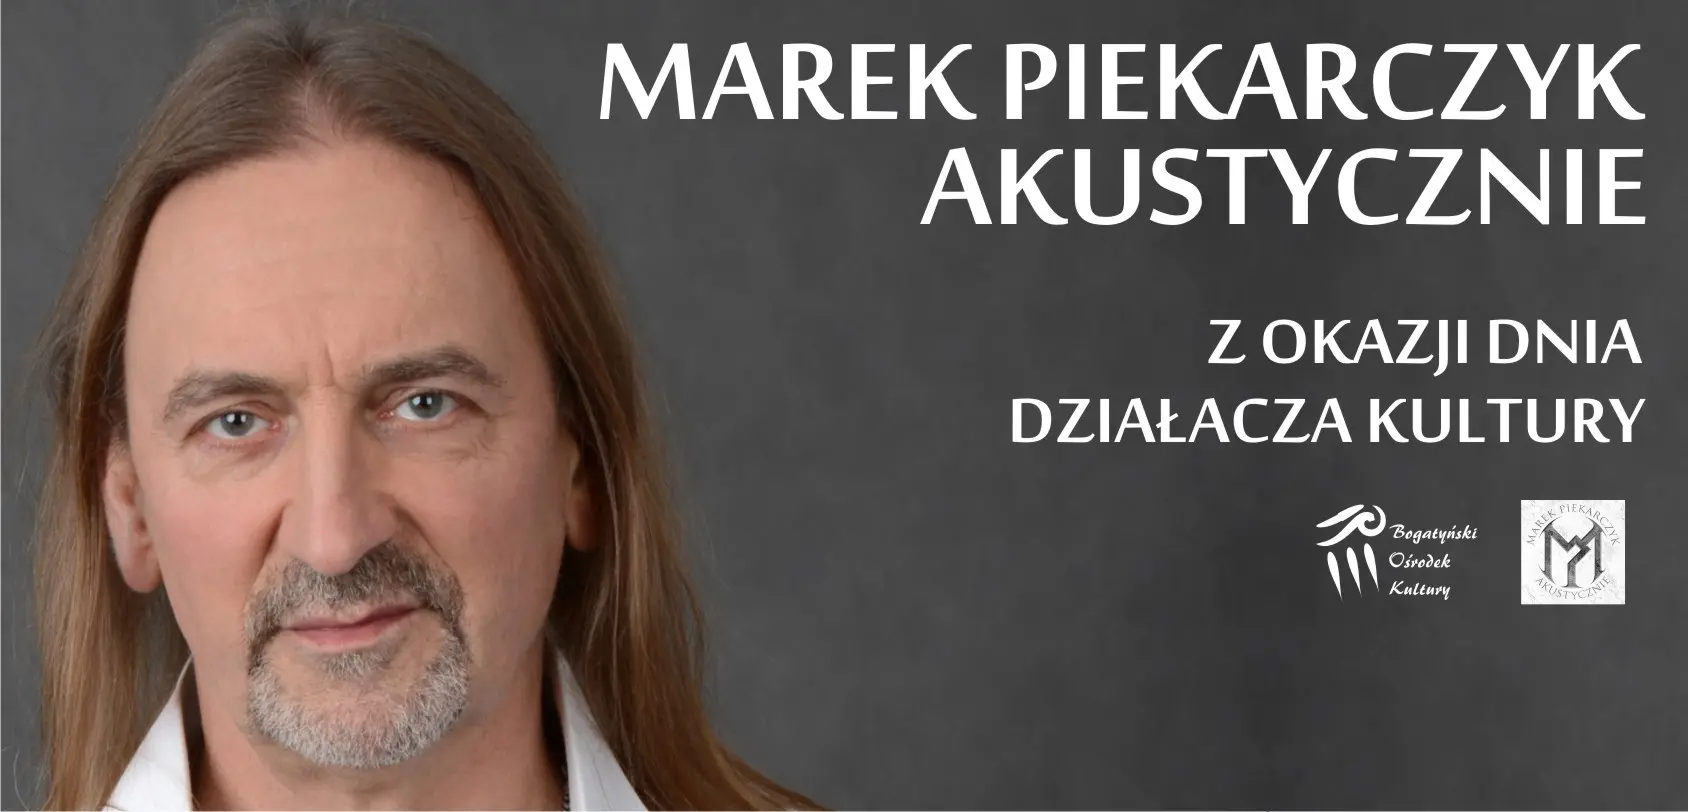 Marek Piekarczyk - akustycznie